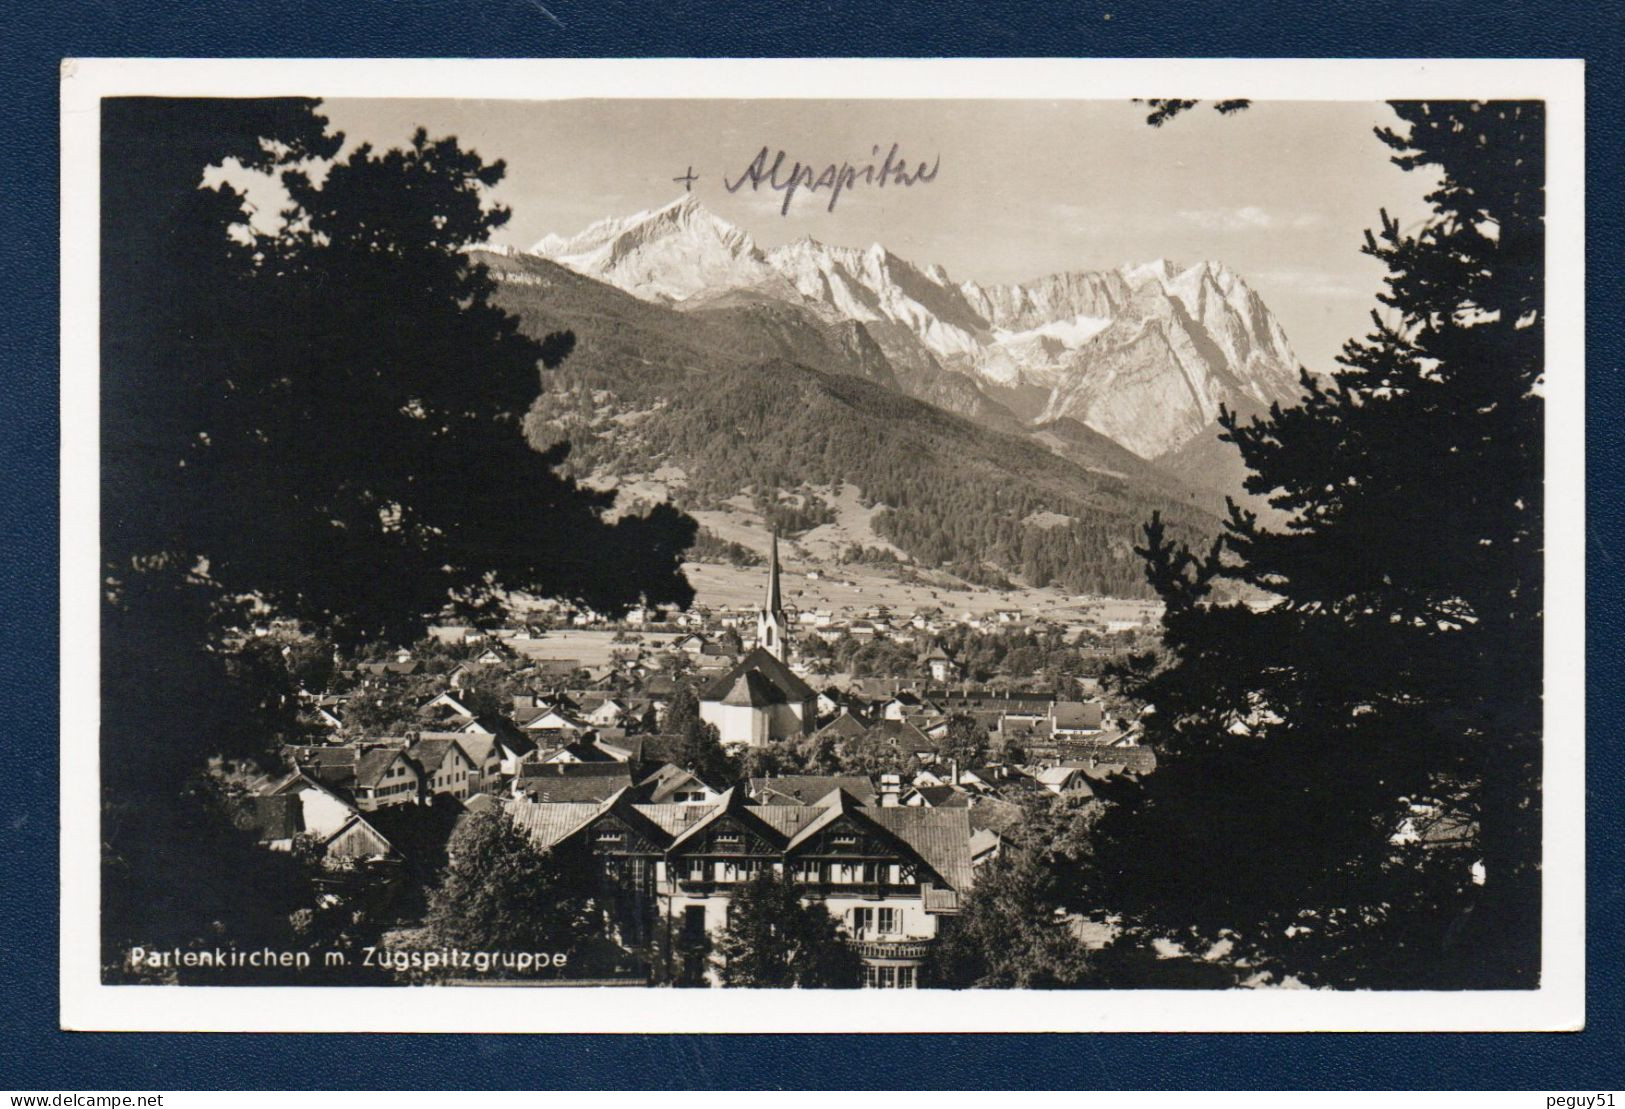 Allemagne. Partenkirchen Mit Zugspitzgruppe. Eglise Maria Himmelfahrt. 1934 - Garmisch-Partenkirchen